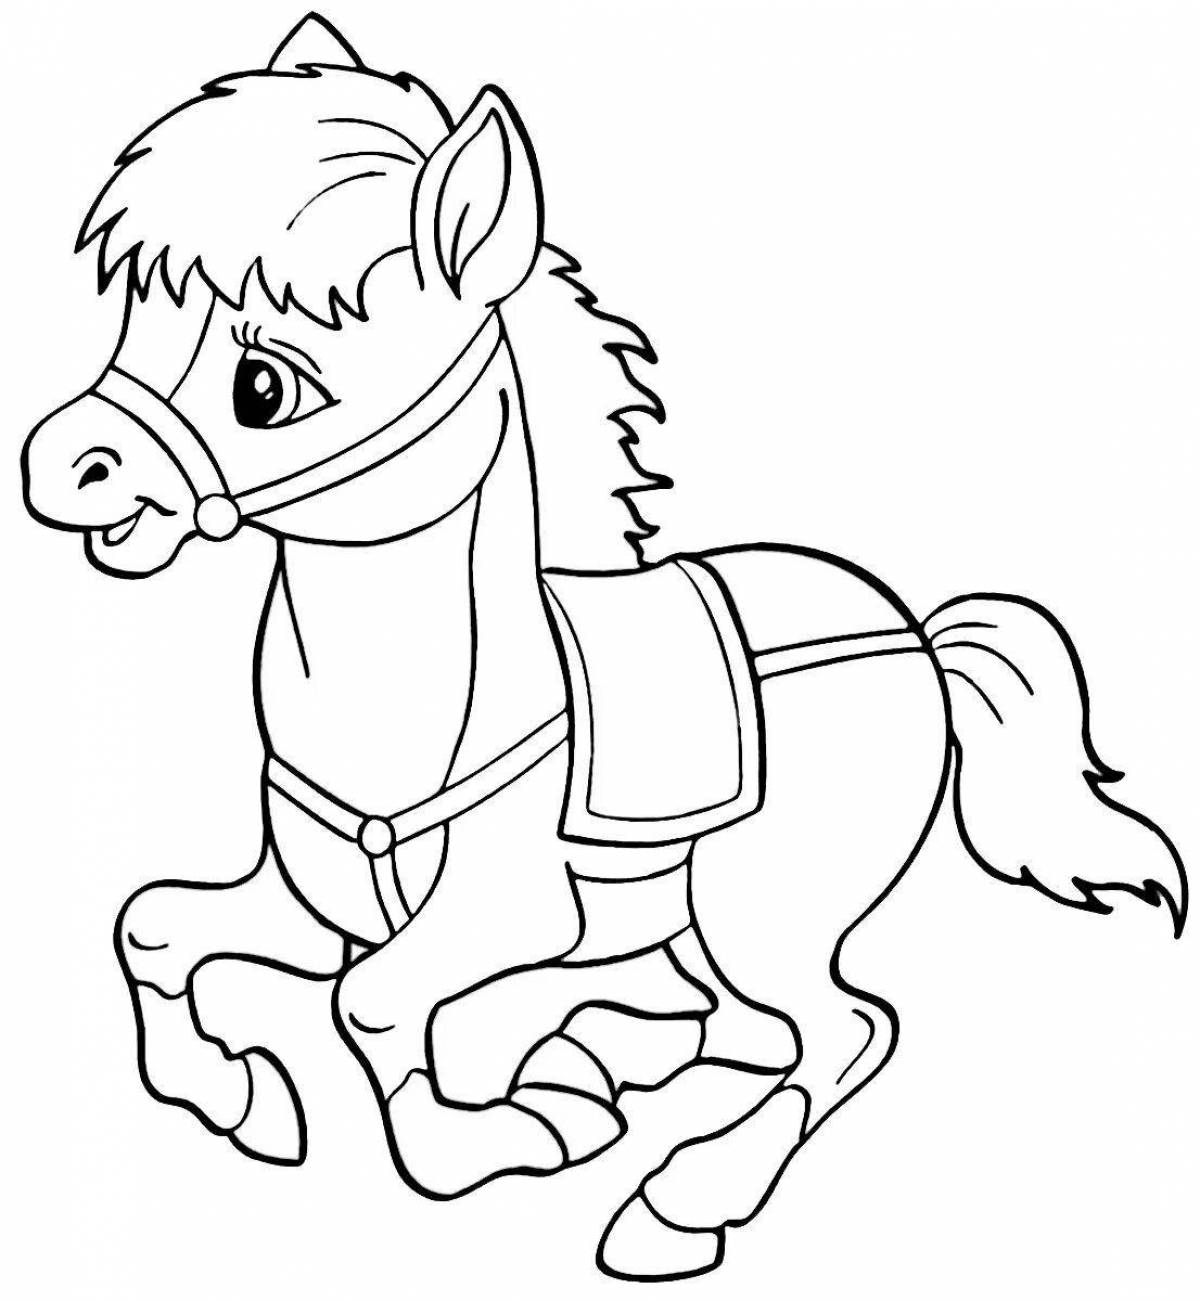 Радиантная раскраска лошадь для детей 2-3 лет